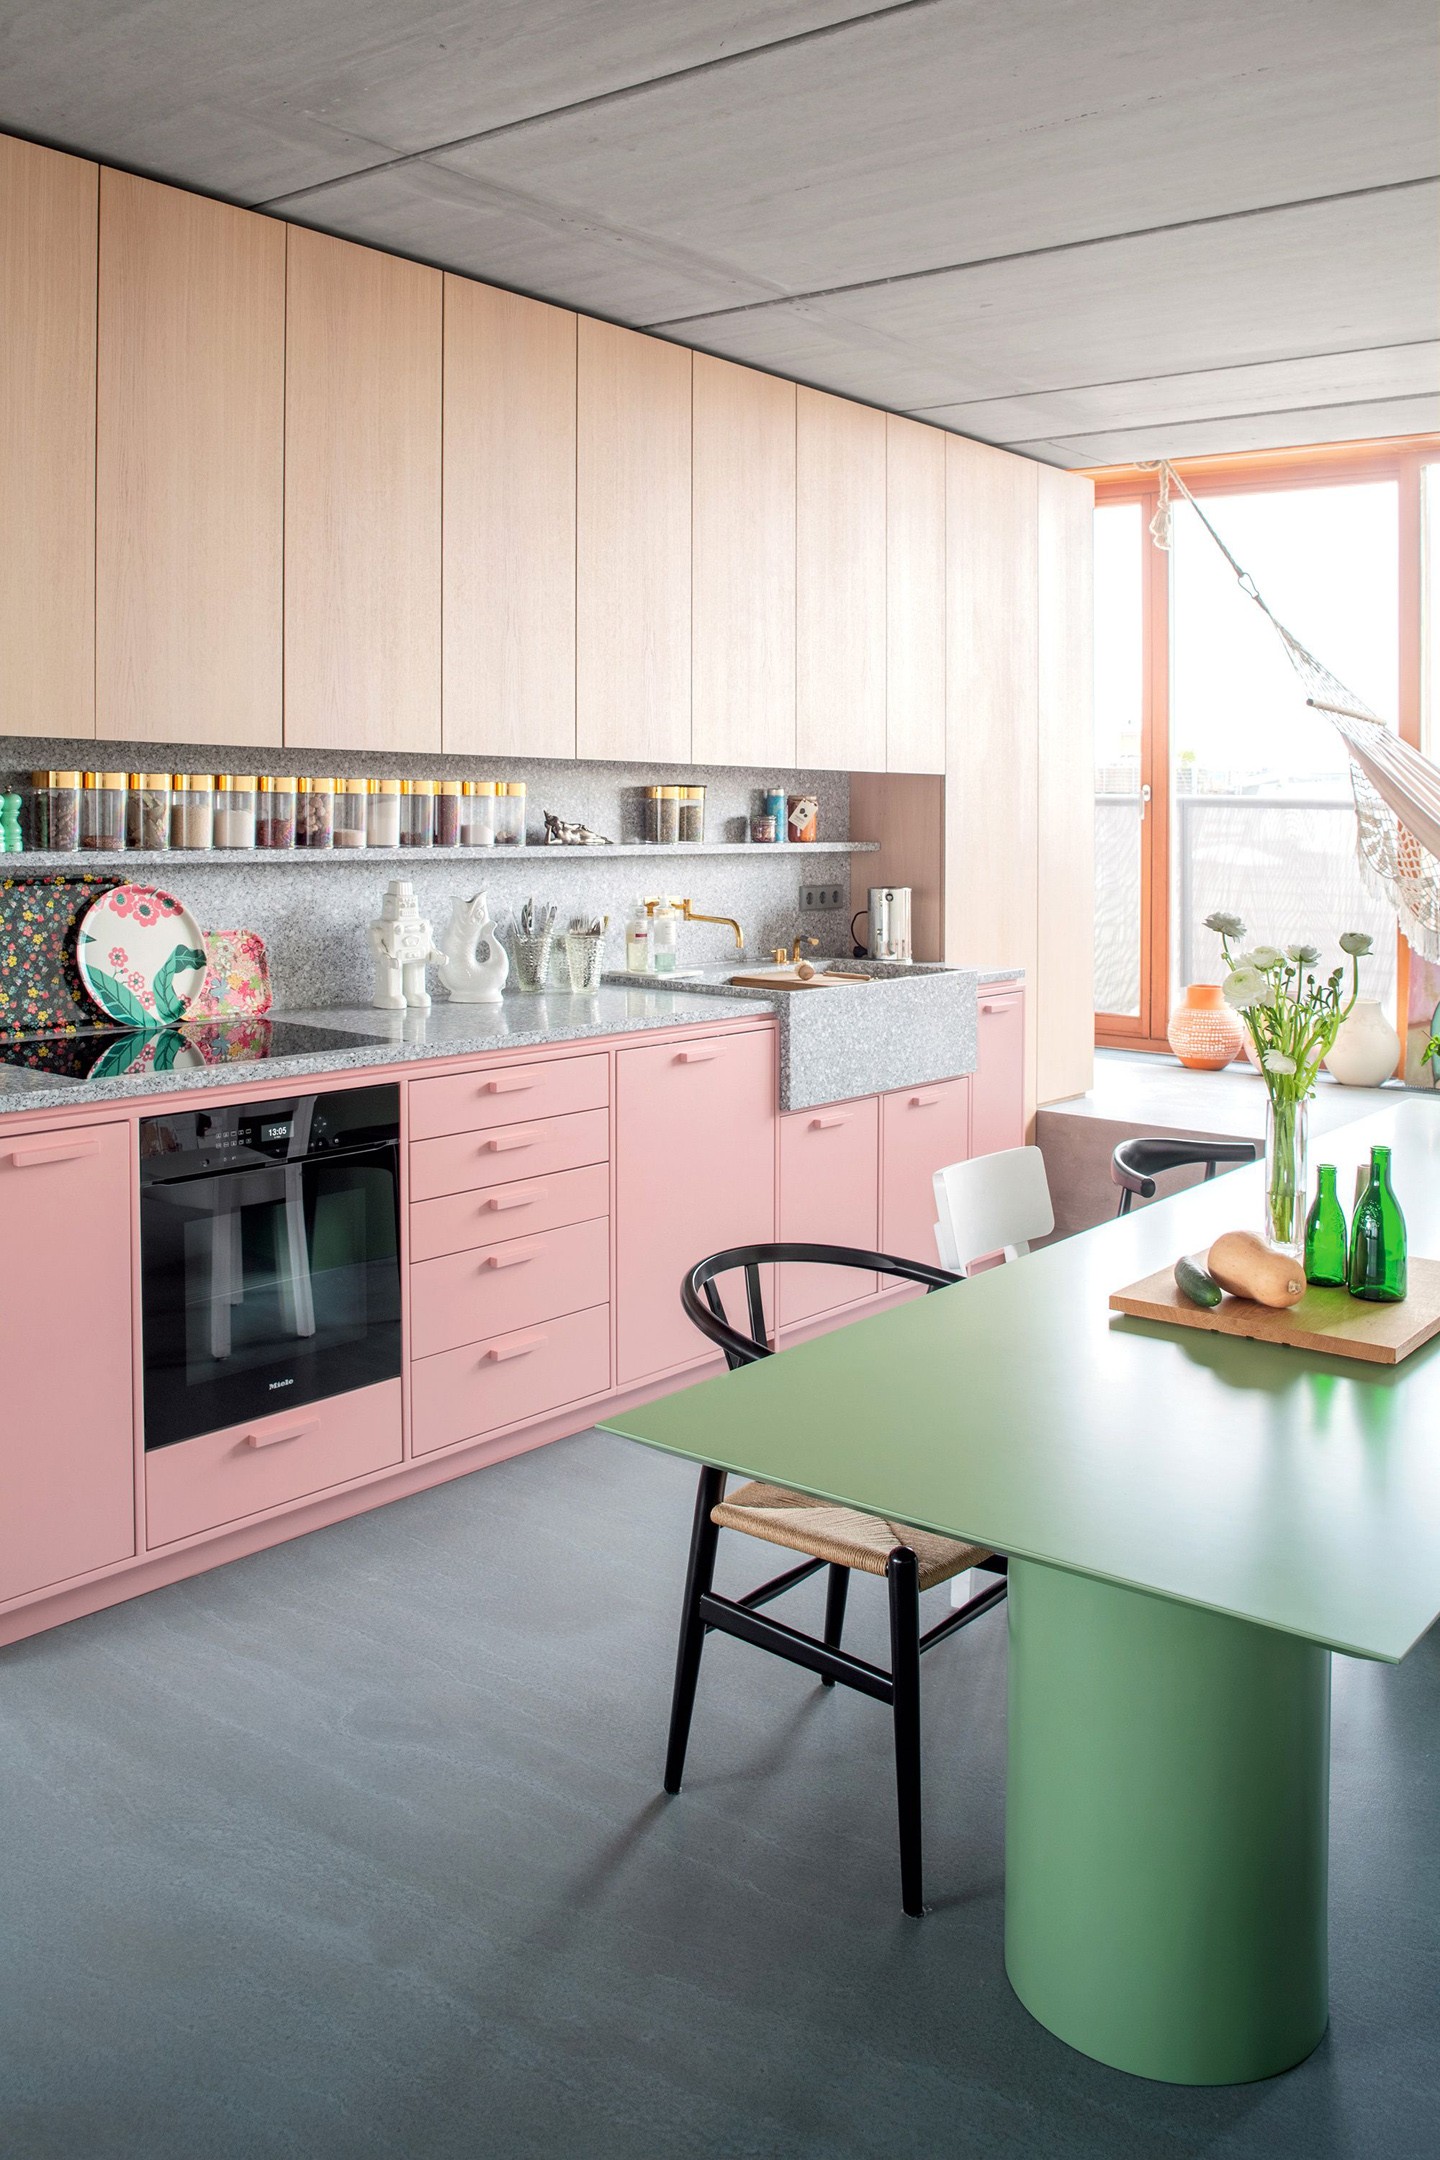 Décor do dia: rosa e verde na cozinha minimalista (Foto: JENS BÖSENBERG/Divulgação)